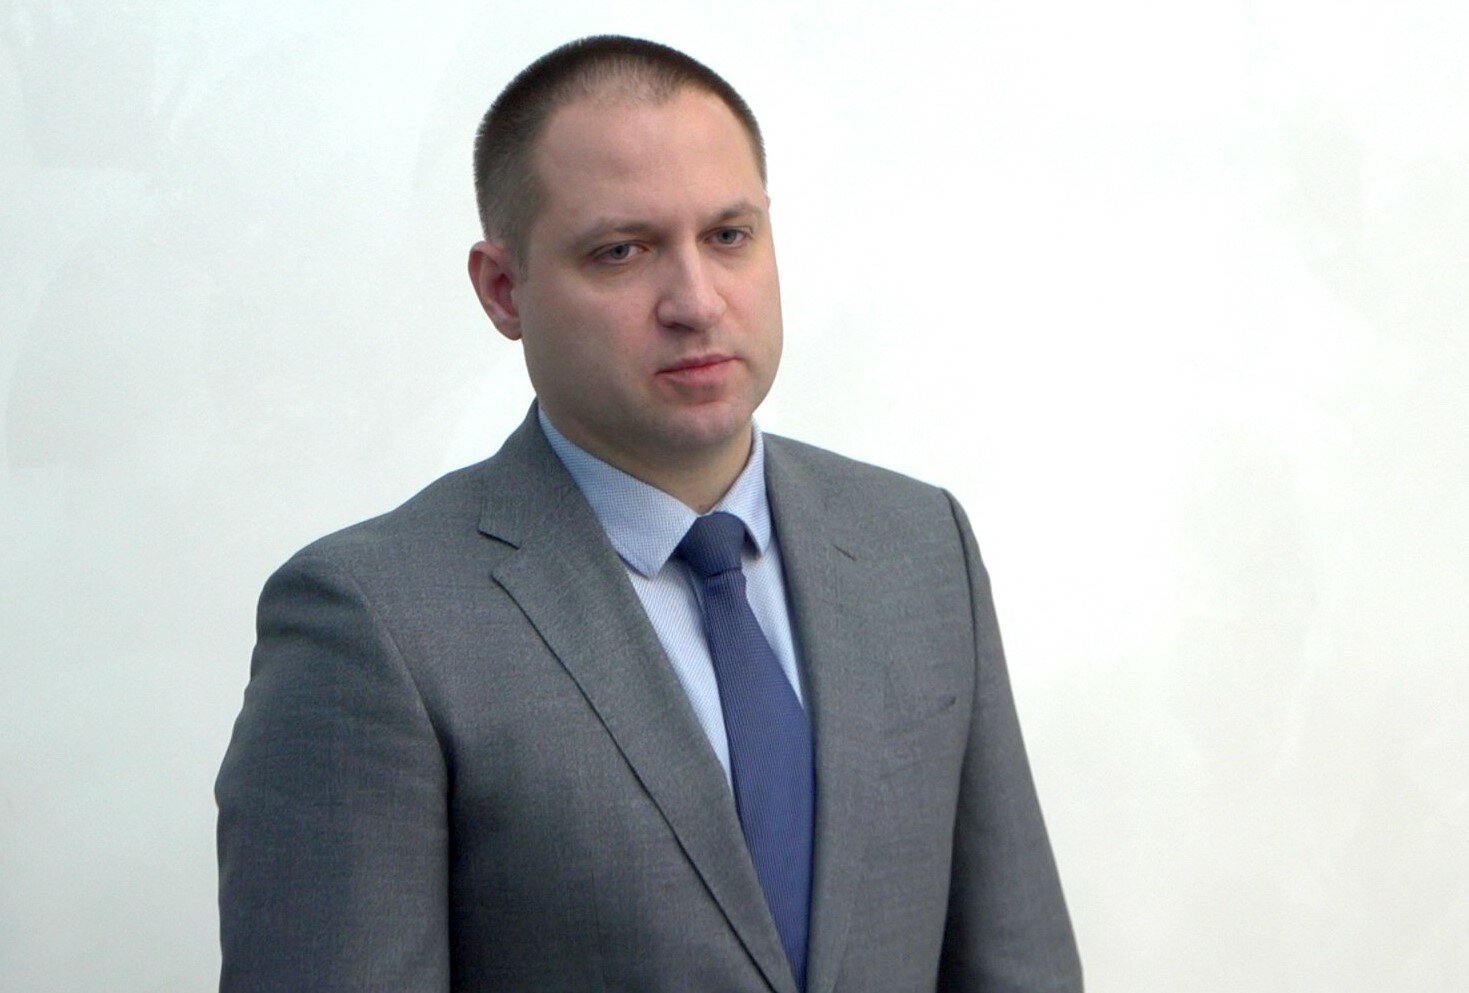 Сергей Алексеев назначен заместителем губернатора по вопросам культуры, спорта и туризма